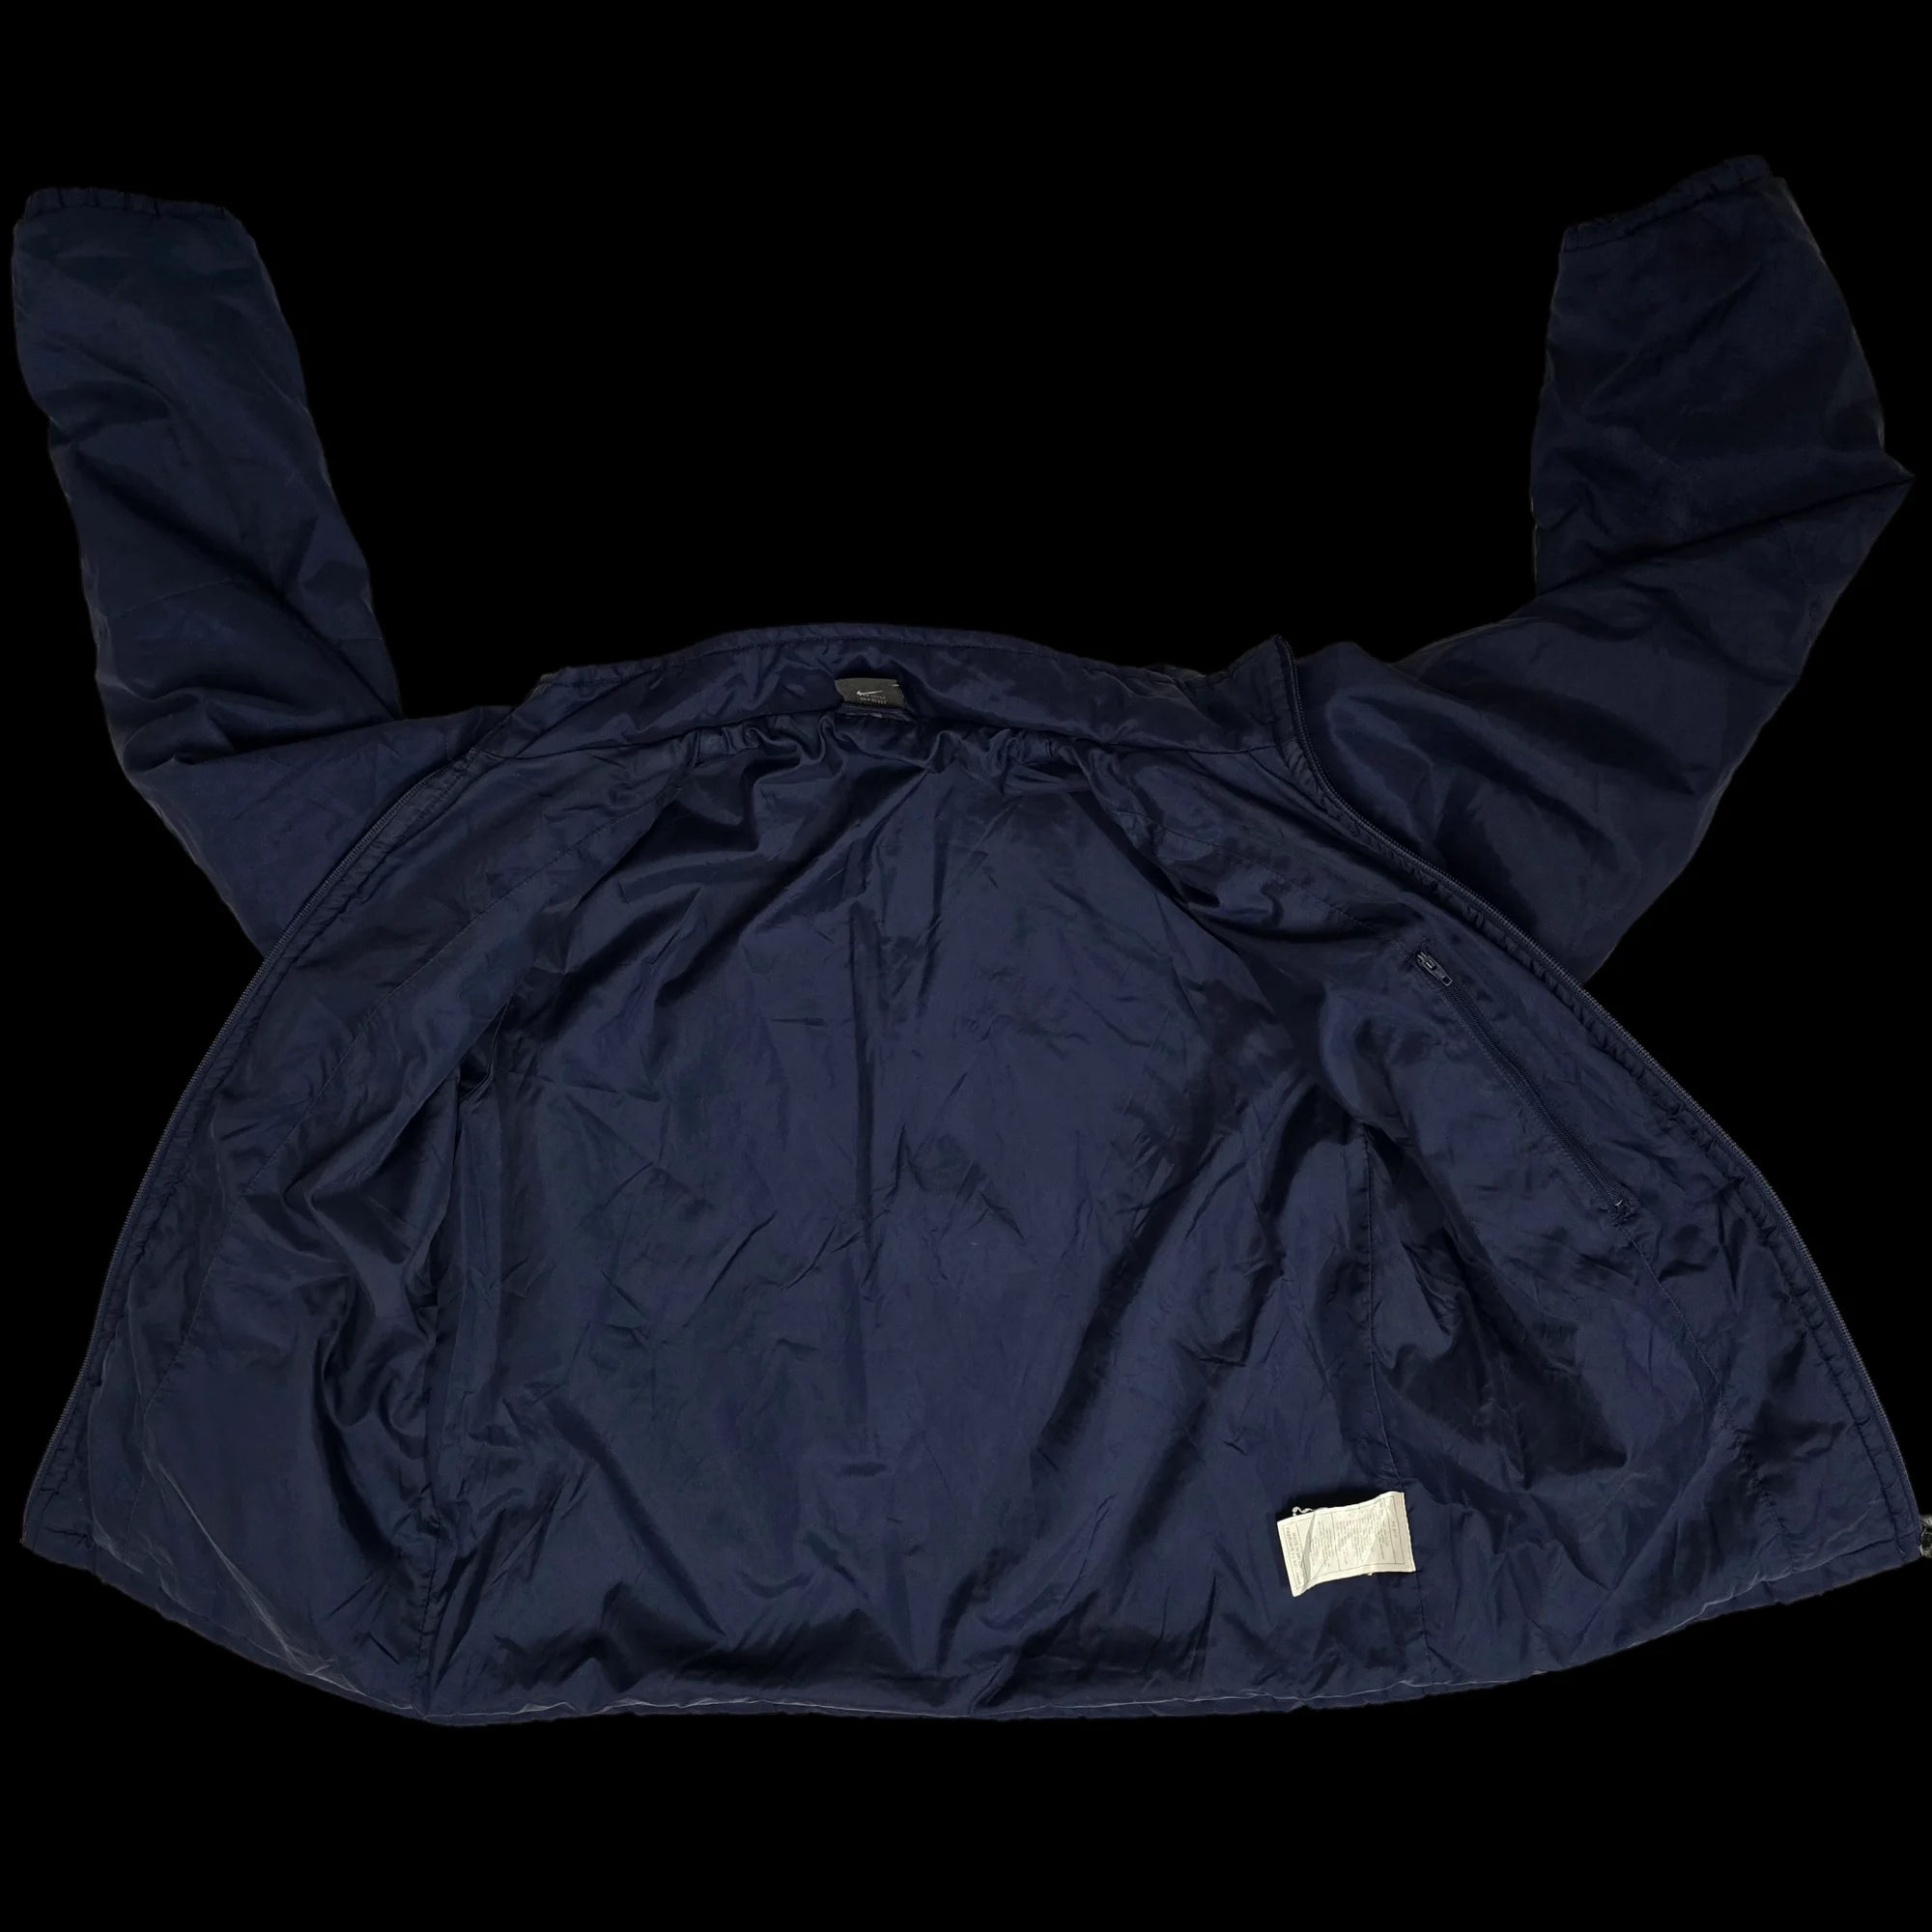 Unisex Nike Blue Bomber Jacket Coat UK Large - 6 - 3465